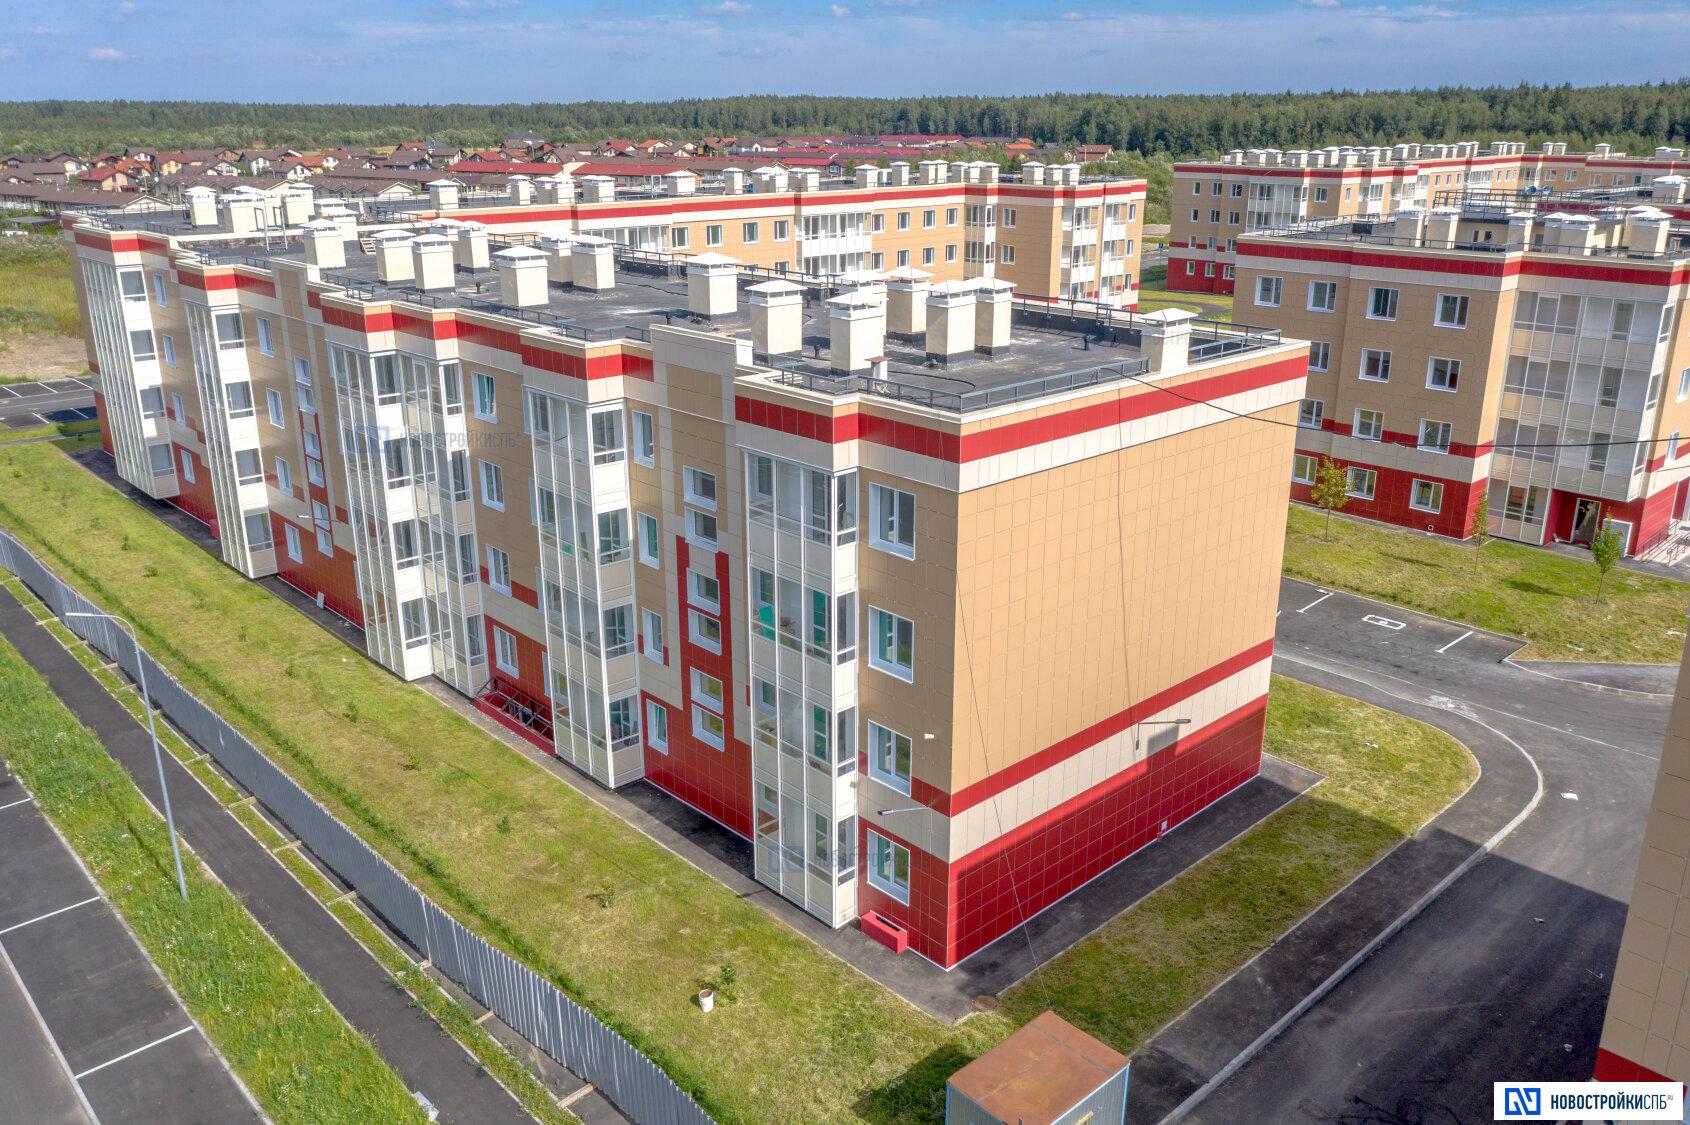 Купить квартиру в ленинградской обл